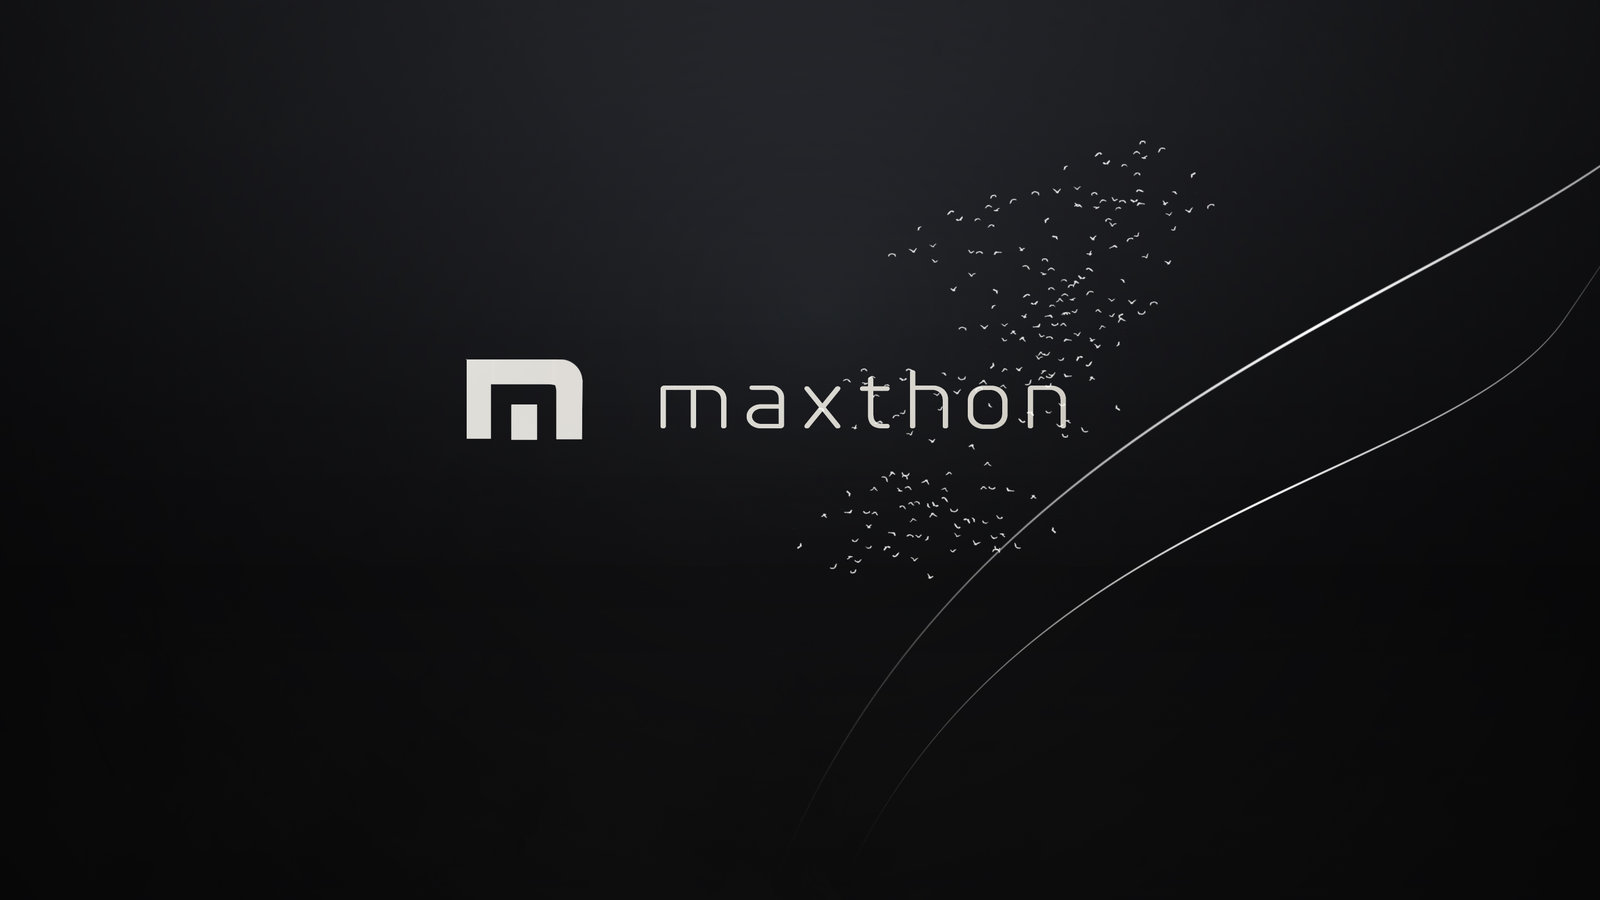 Maxthon Browser Wallpaper Black Version By Klamek97